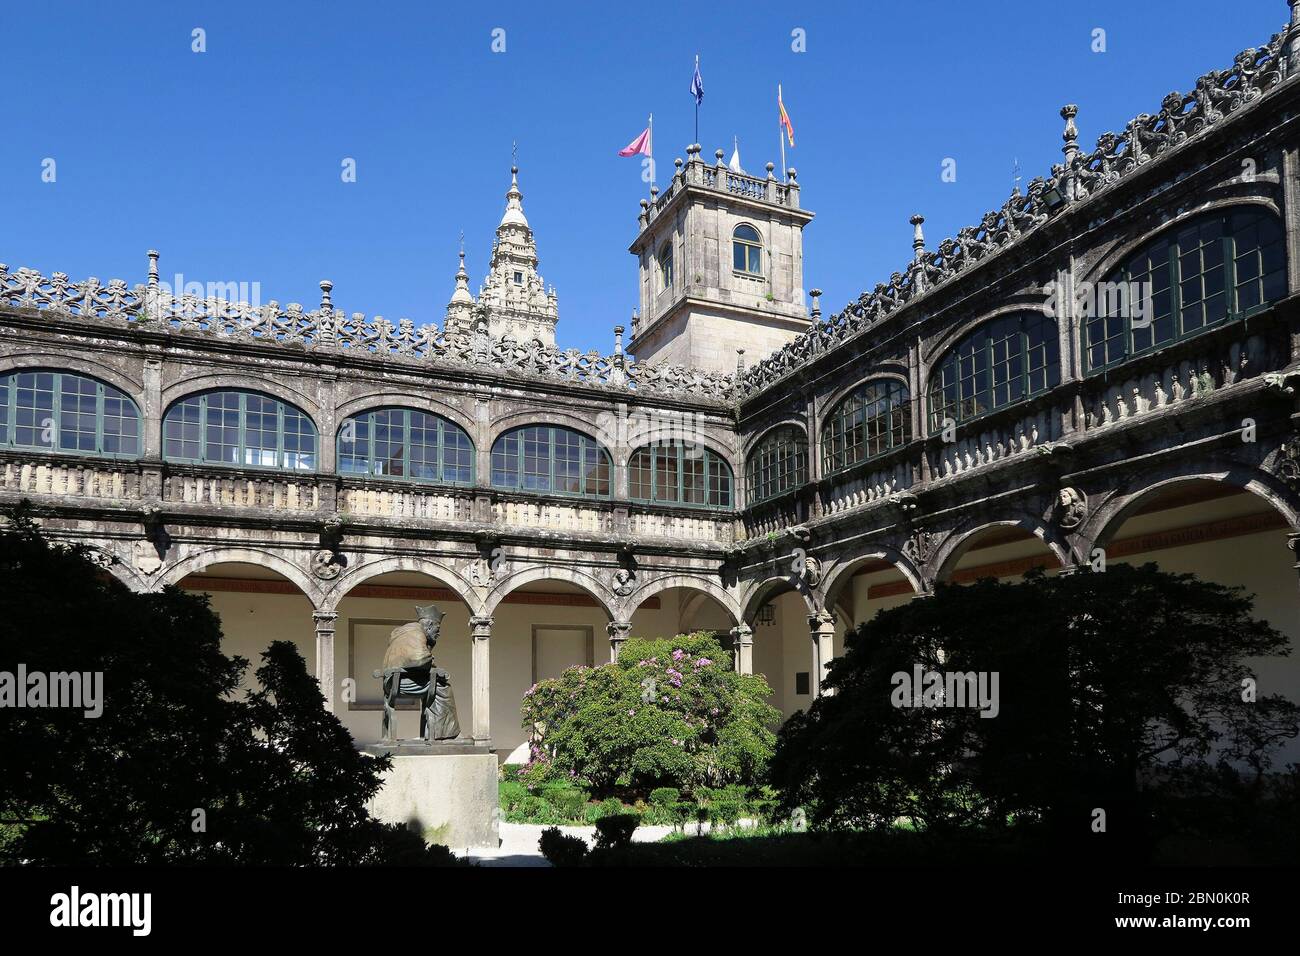 Colegio Fonseca at the Universidad de Santiago de Compostela university in Santiago de Compostela, Galicia, Spai Stock Photo